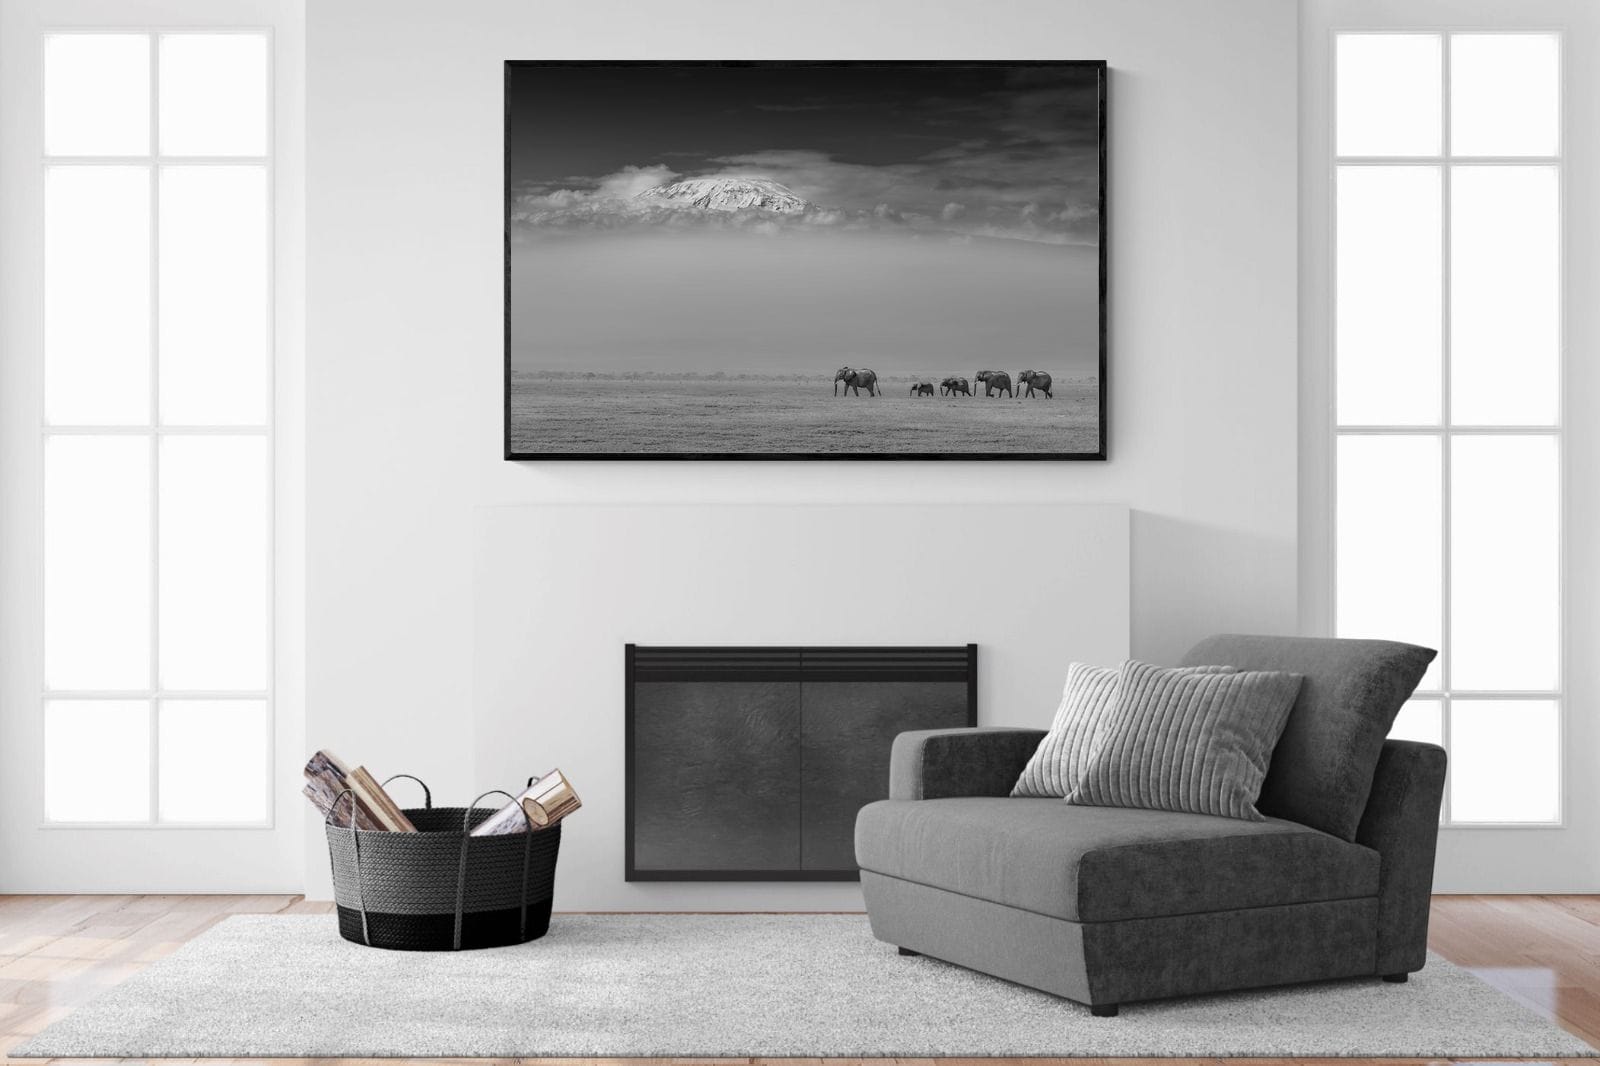 Mountain Elephants-Wall_Art-150 x 100cm-Mounted Canvas-Black-Pixalot